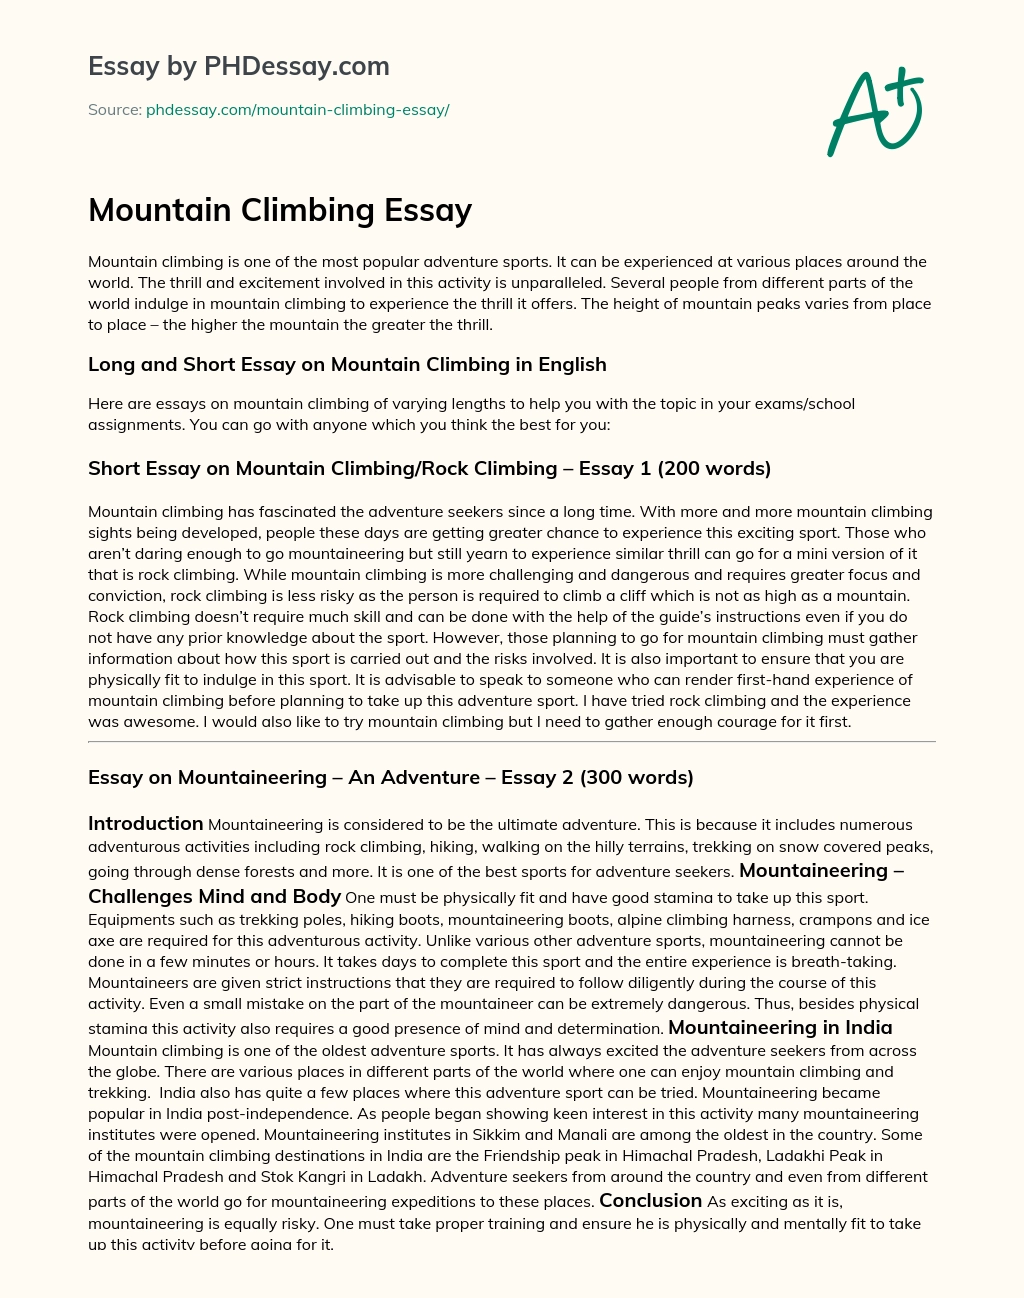 Mountain Climbing essay